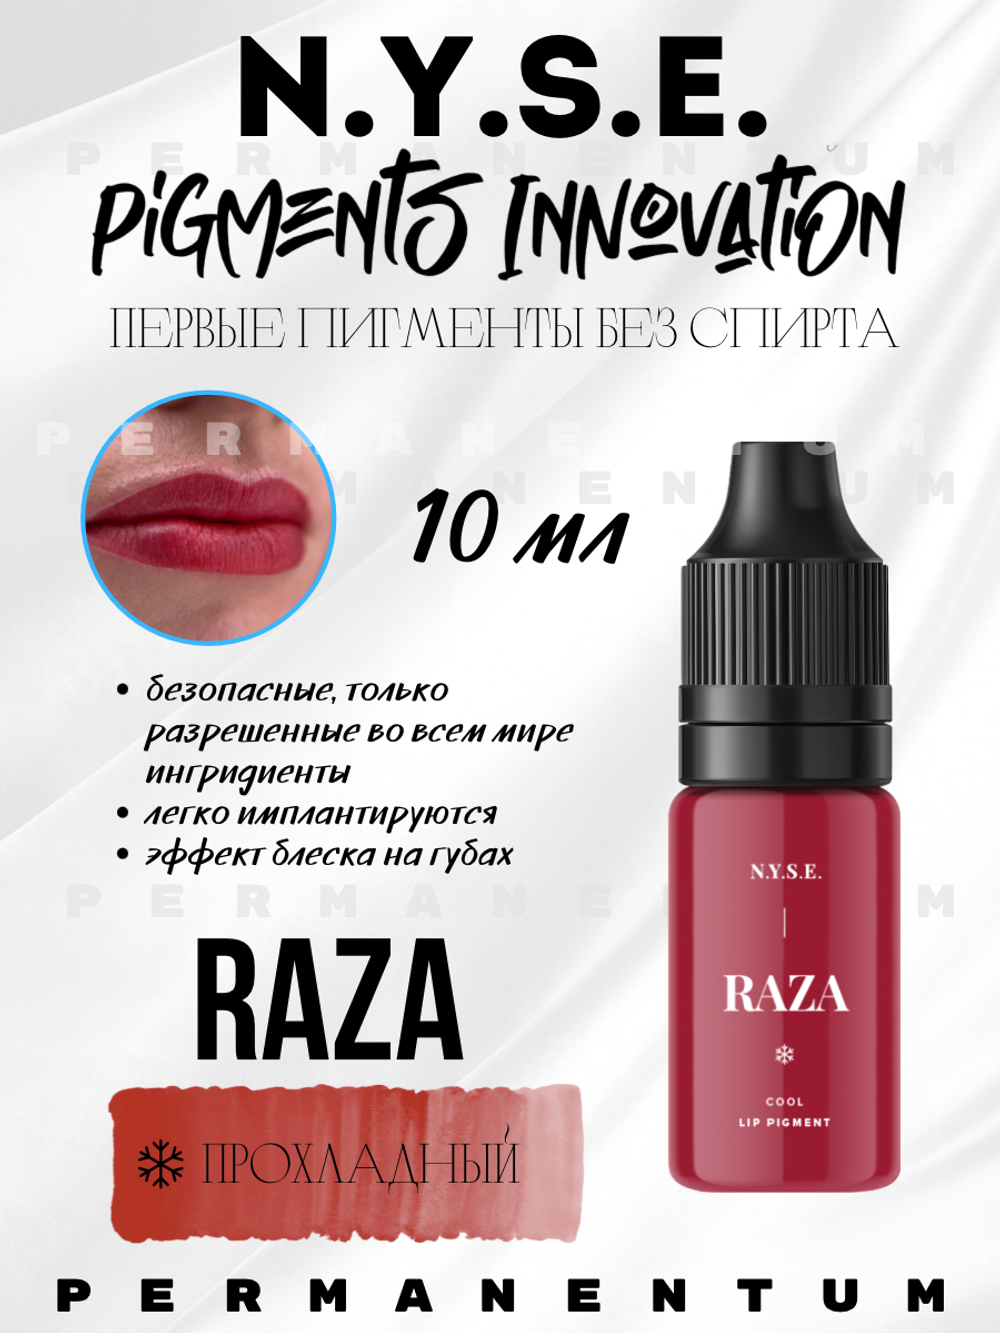 Пигмент для губ INNOVATION "RAZA" от Алёны Пестовой